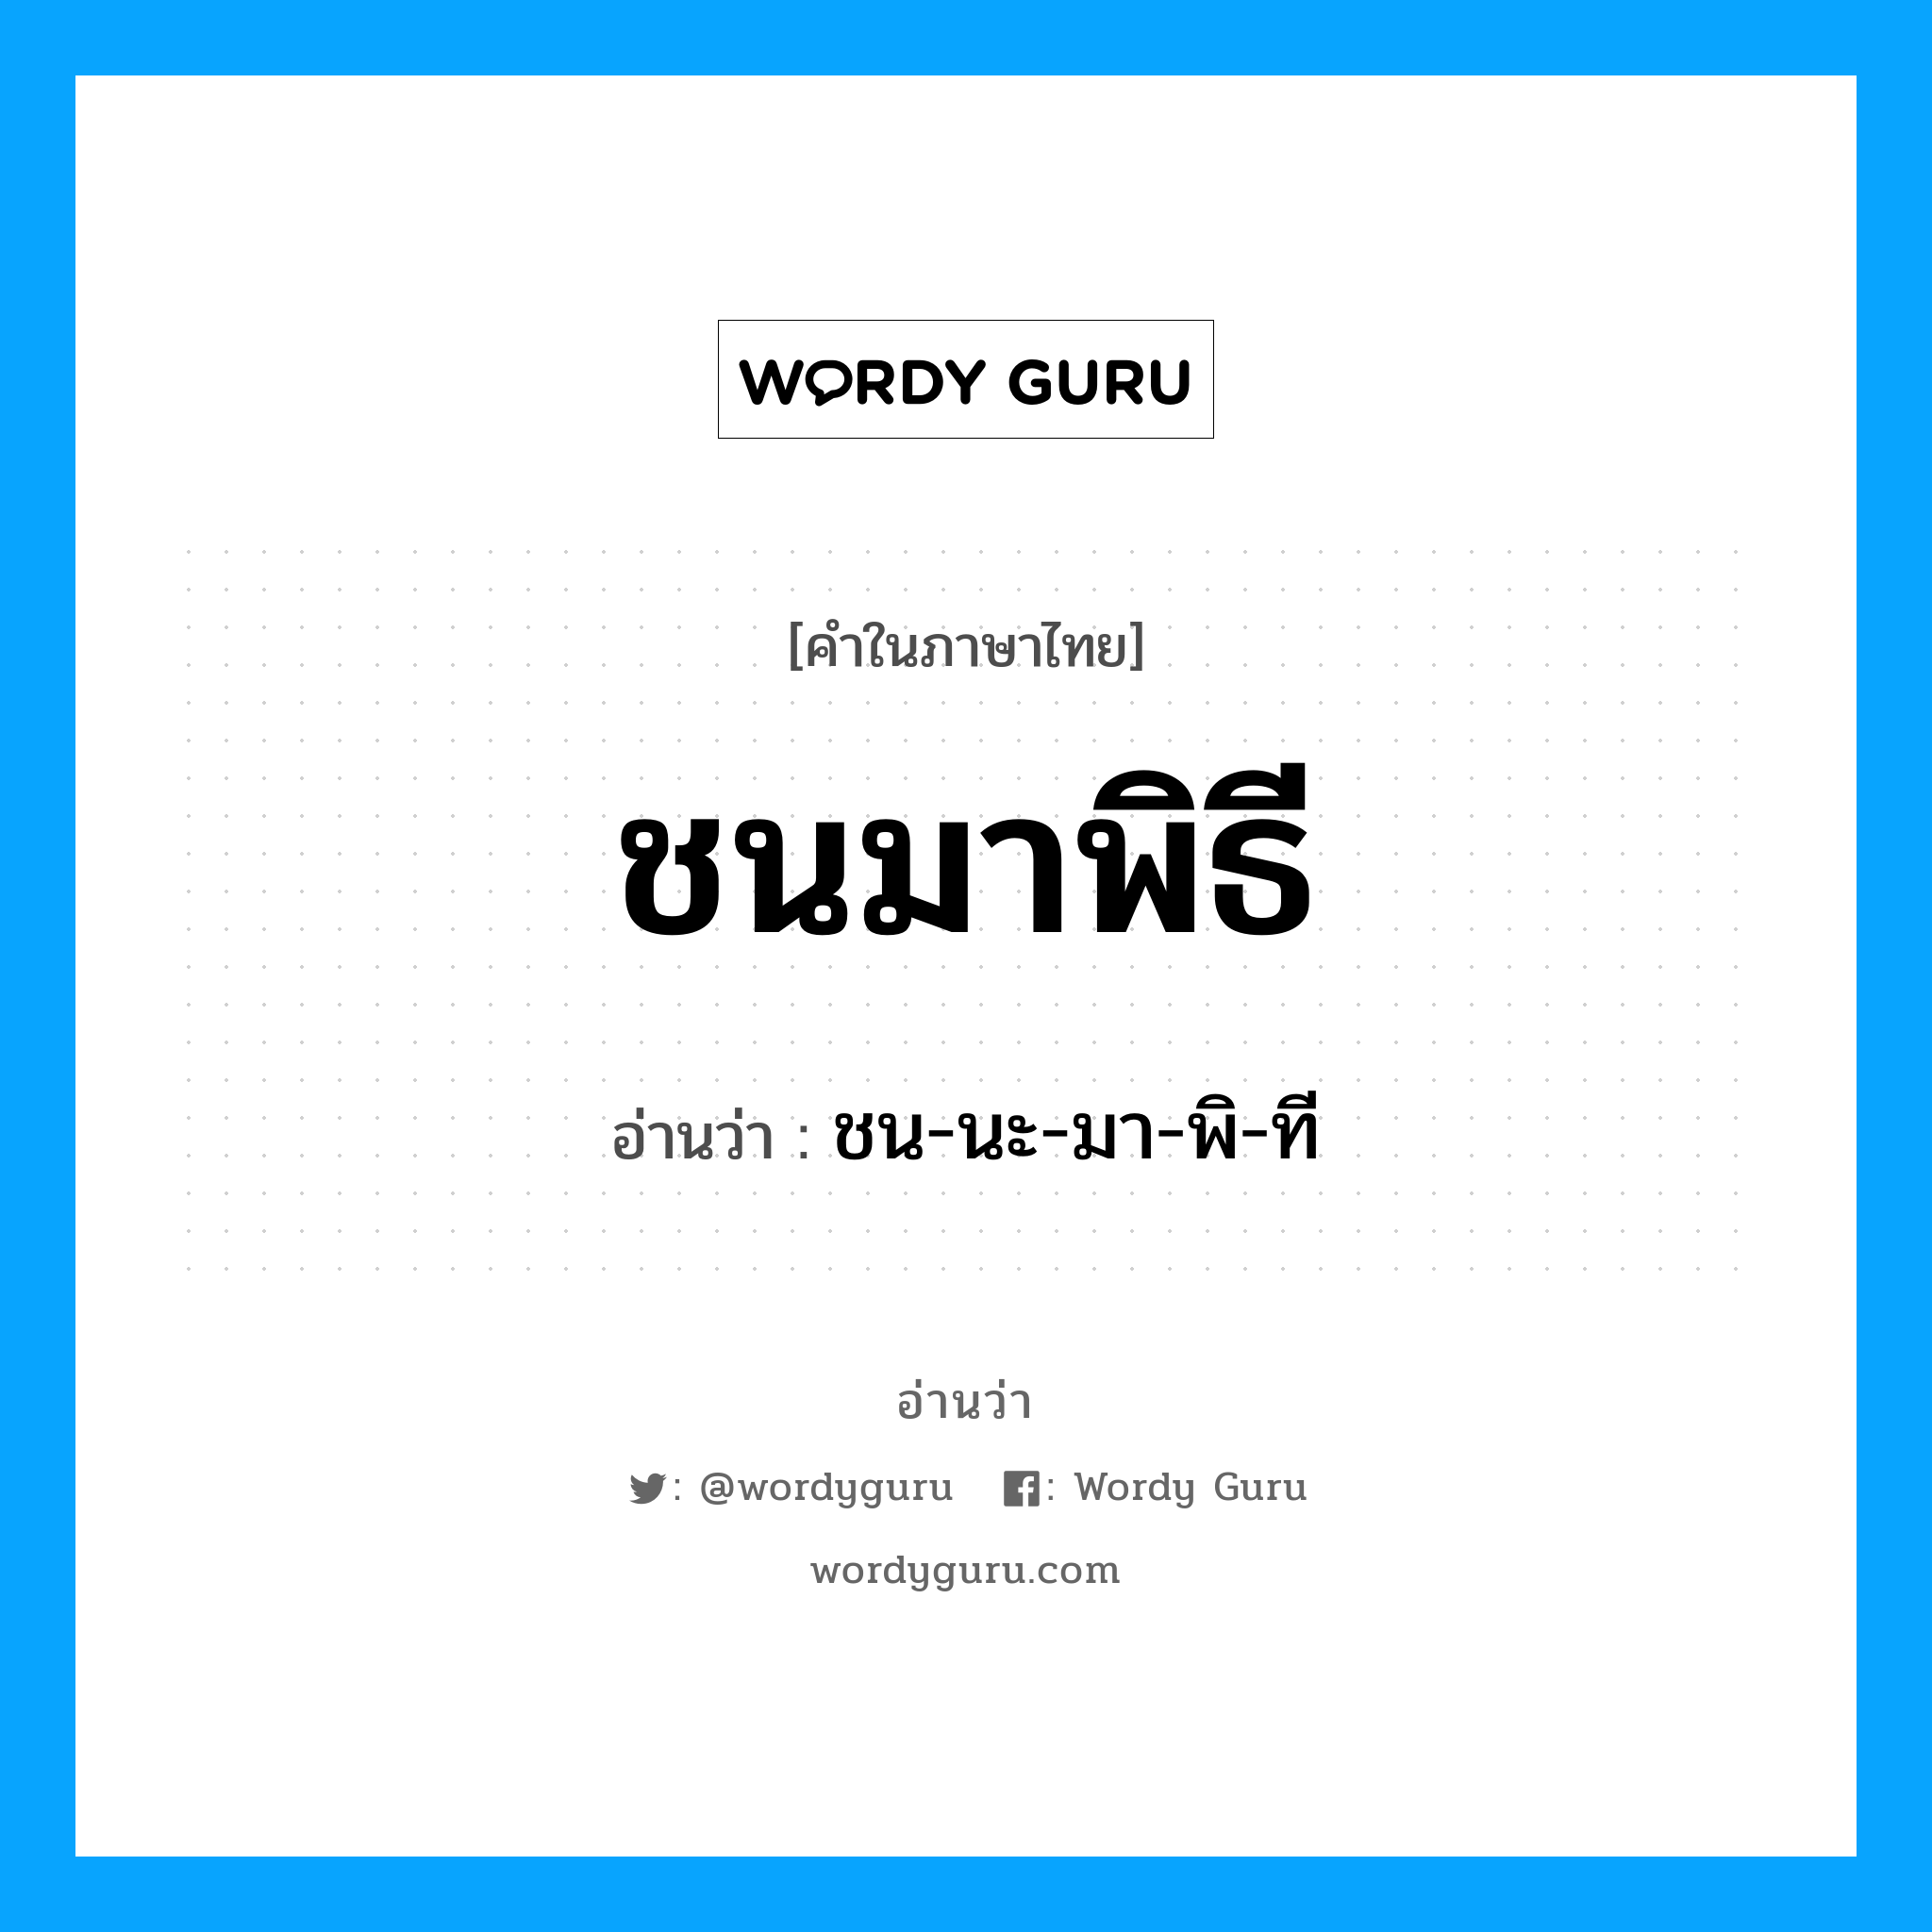 ชน-นะ-มา-พิ-ที เป็นคำอ่านของคำไหน?, คำในภาษาไทย ชน-นะ-มา-พิ-ที อ่านว่า ชนมาพิธี